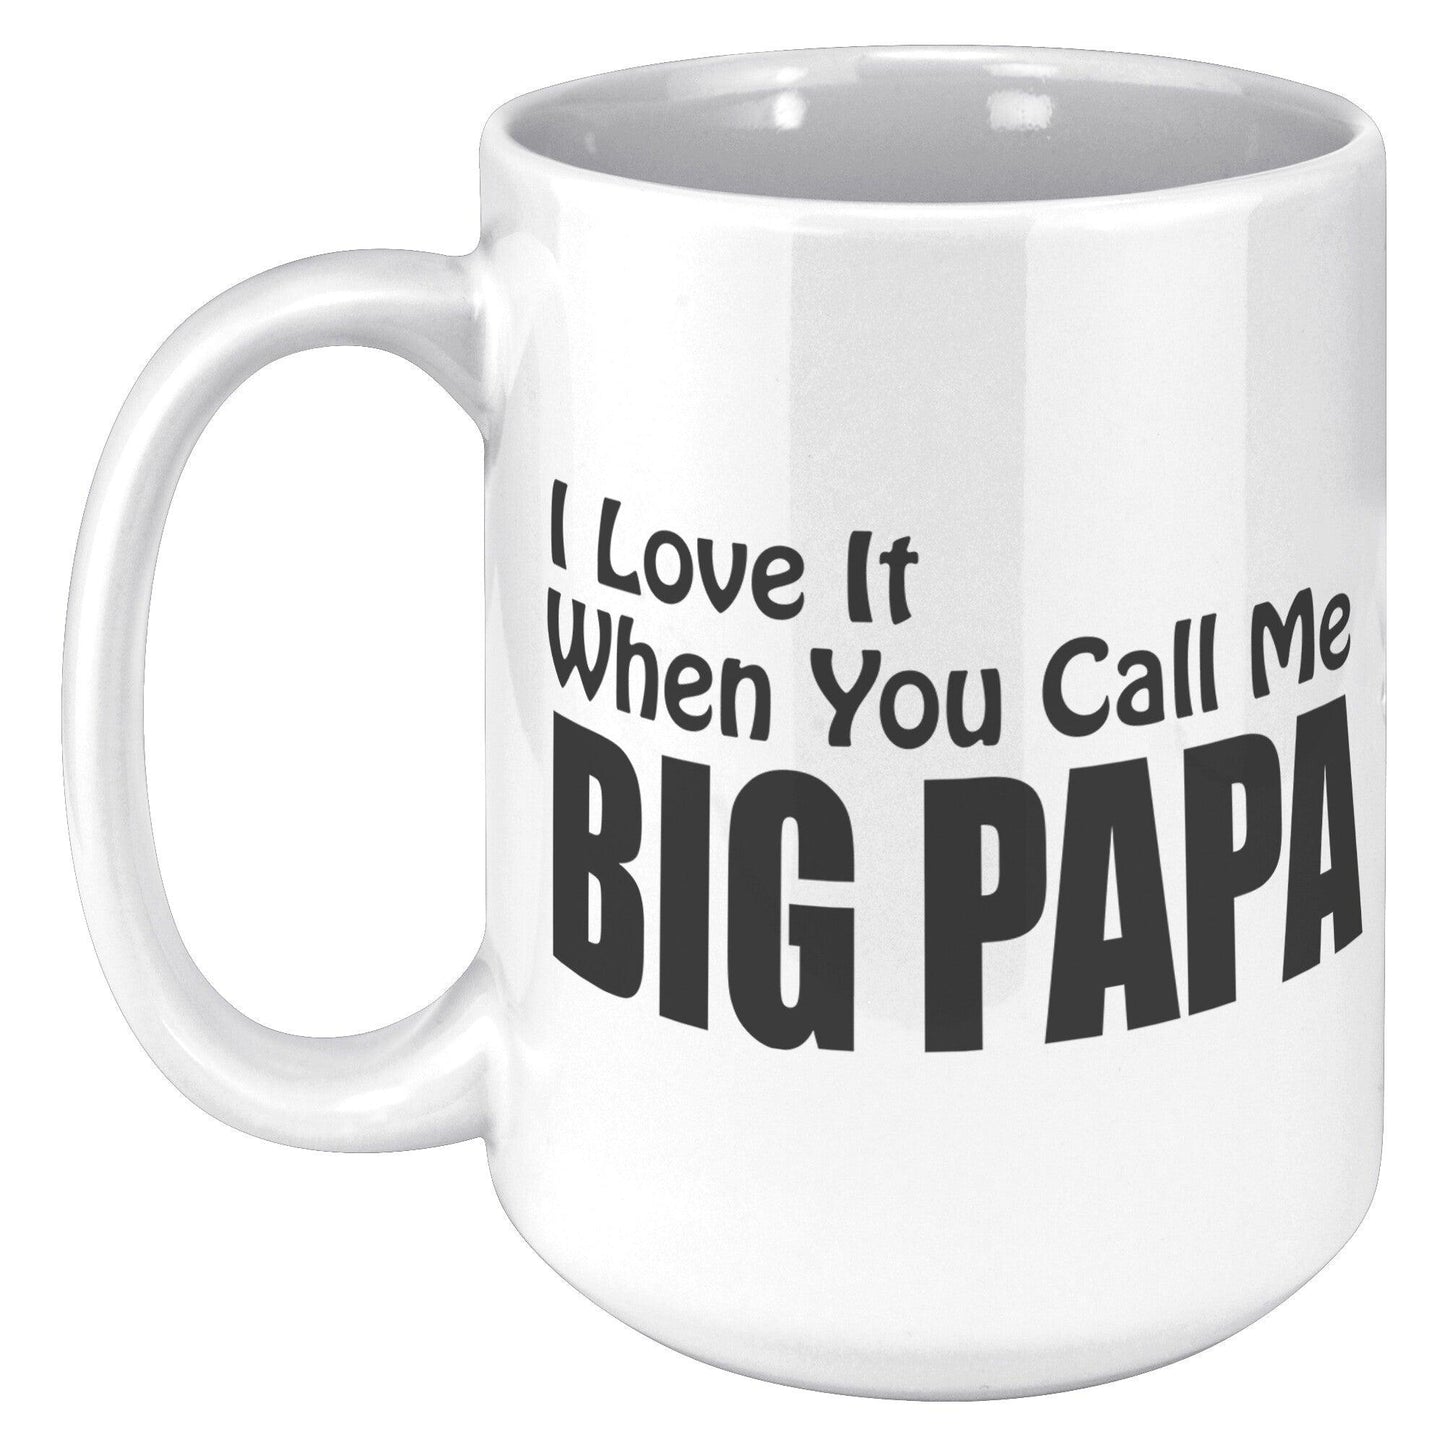 I love It When You Call Me -BIG PAPA White Mug - TheGivenGet